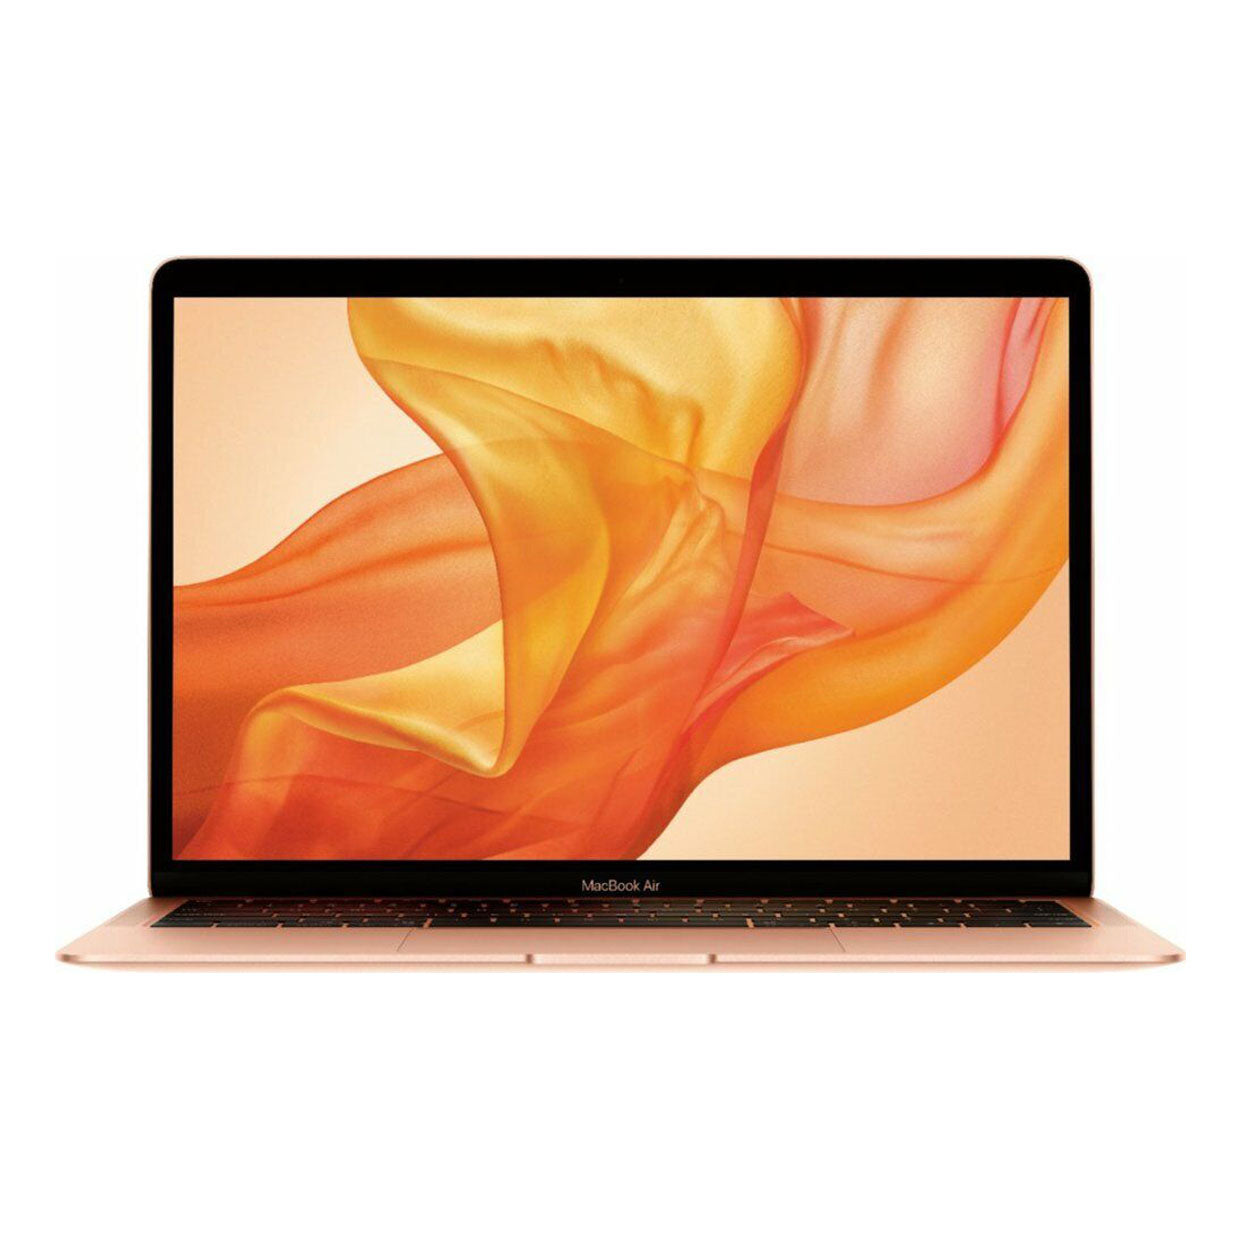 Apple Macbook Air | MWTL2 | CORE i3 |8GB RAM |256GB SSD